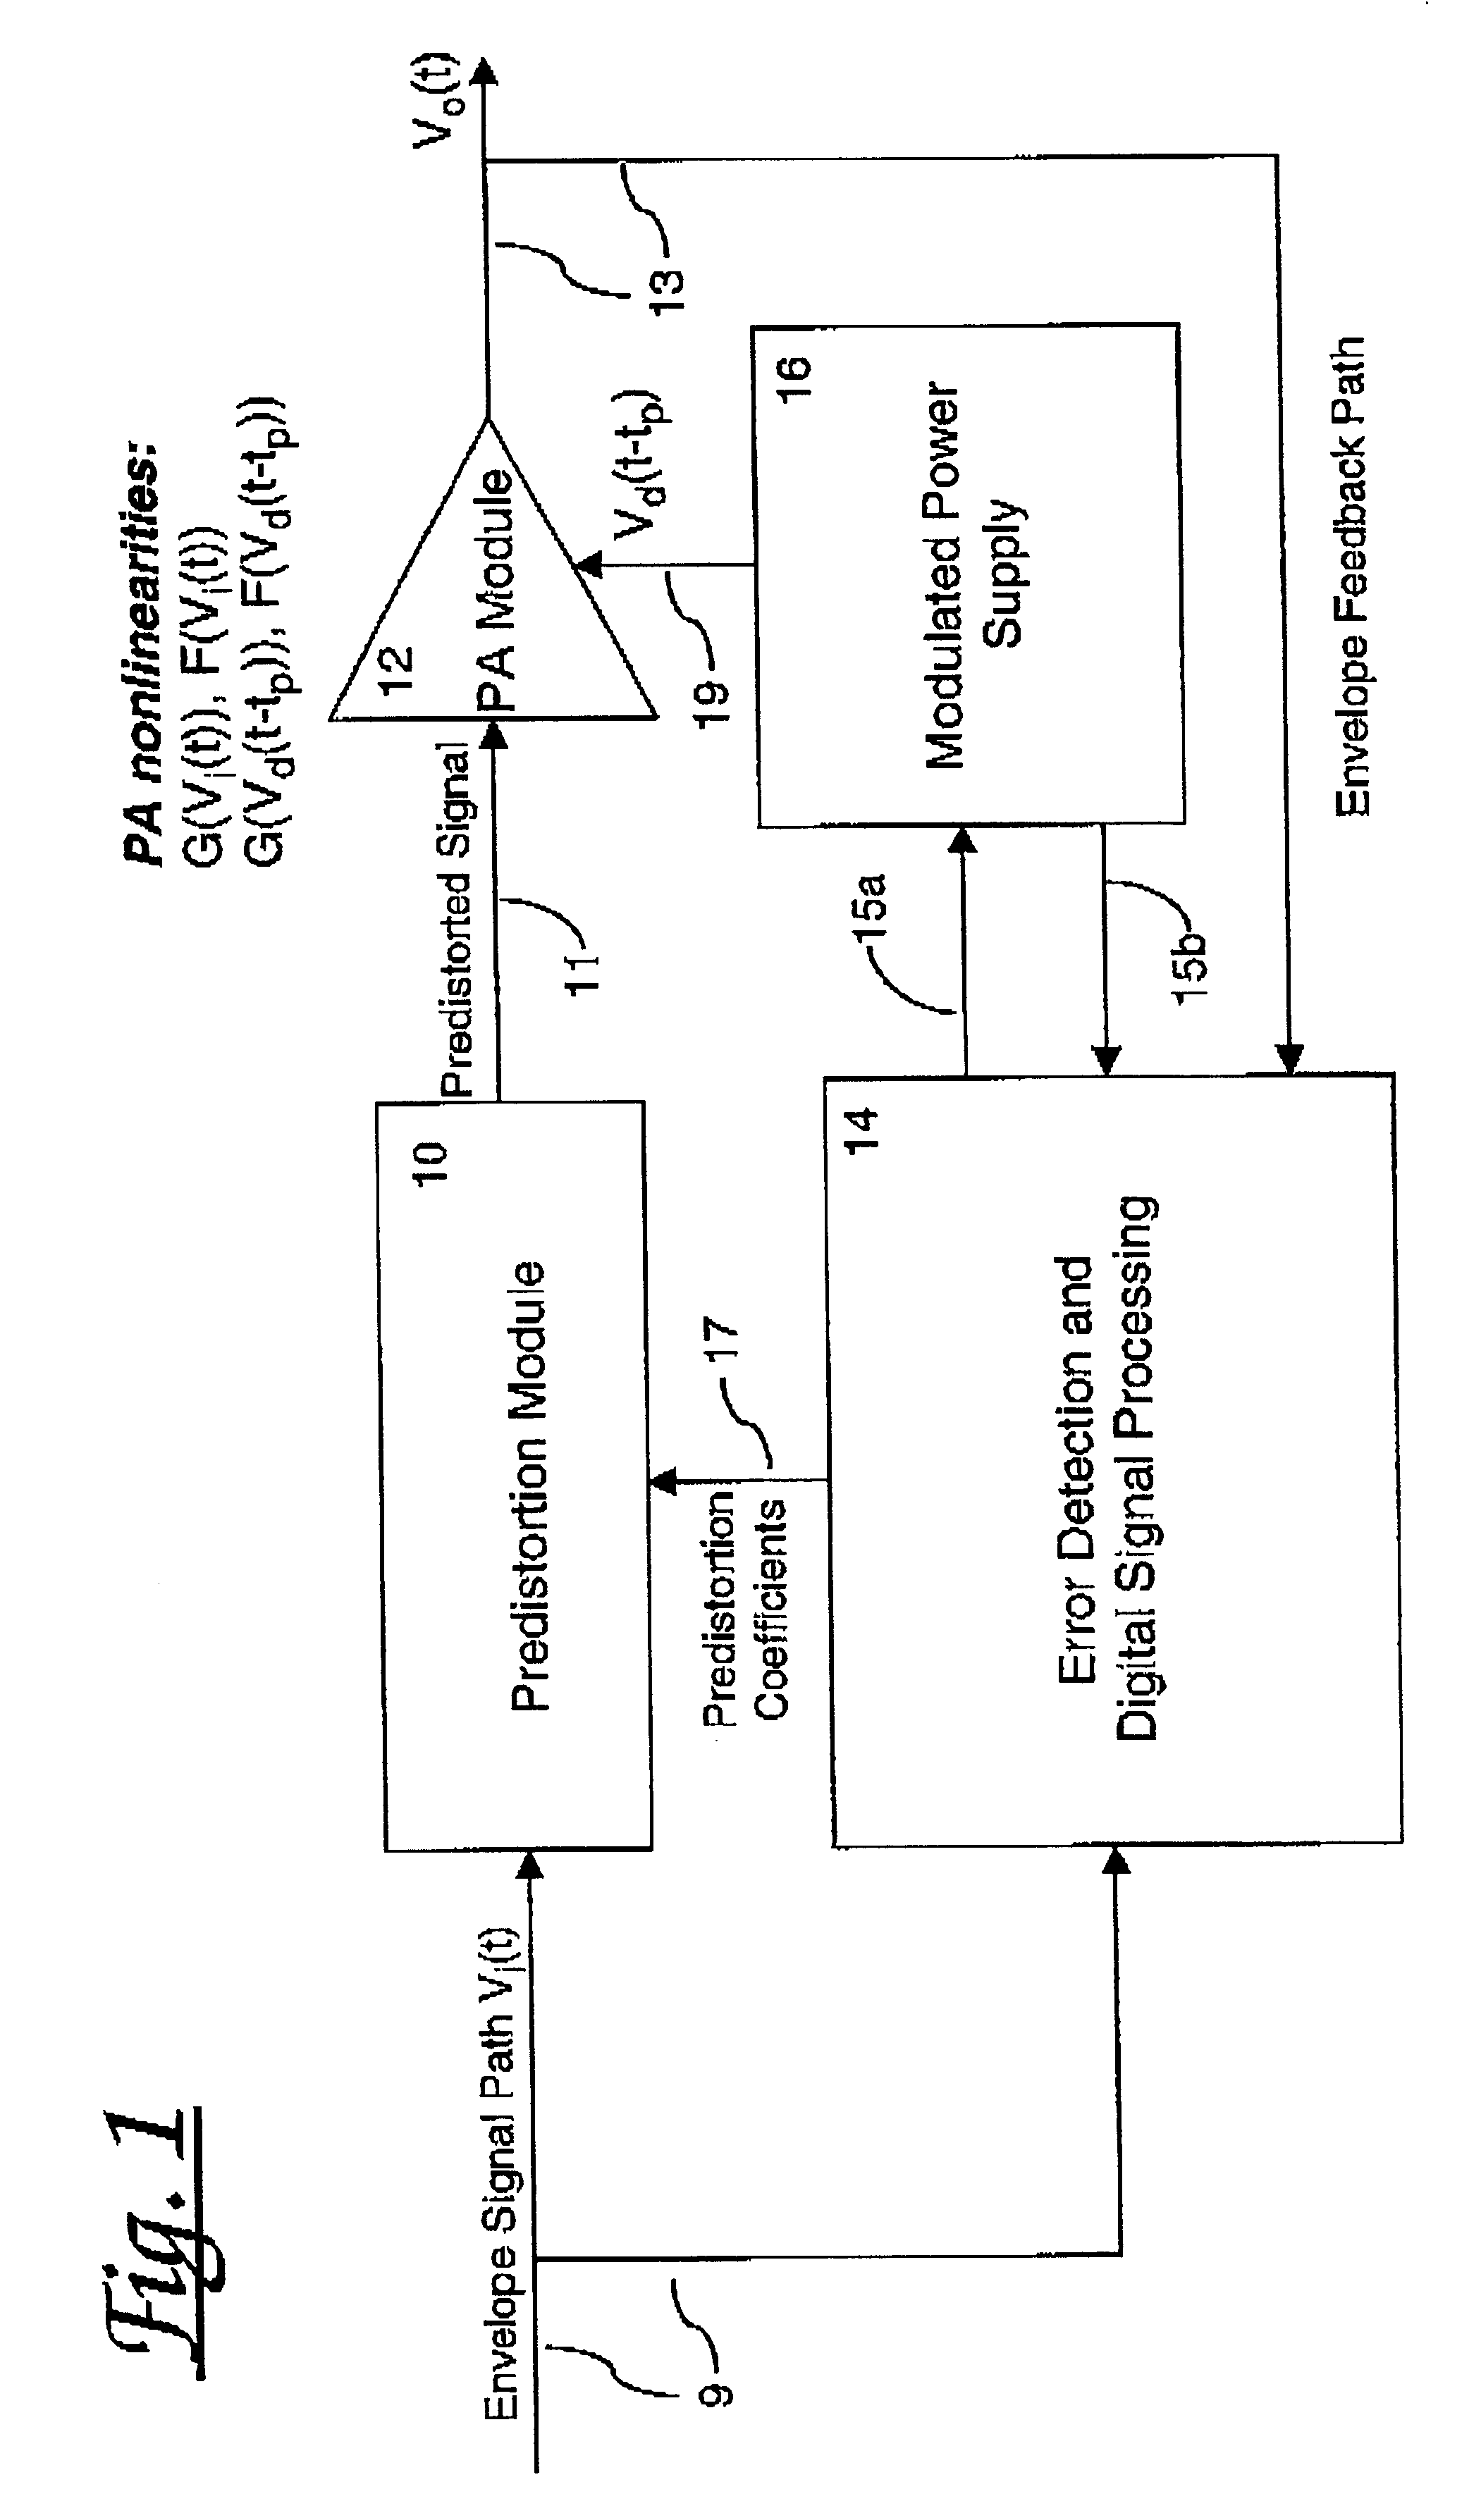 Power amplifier configuration